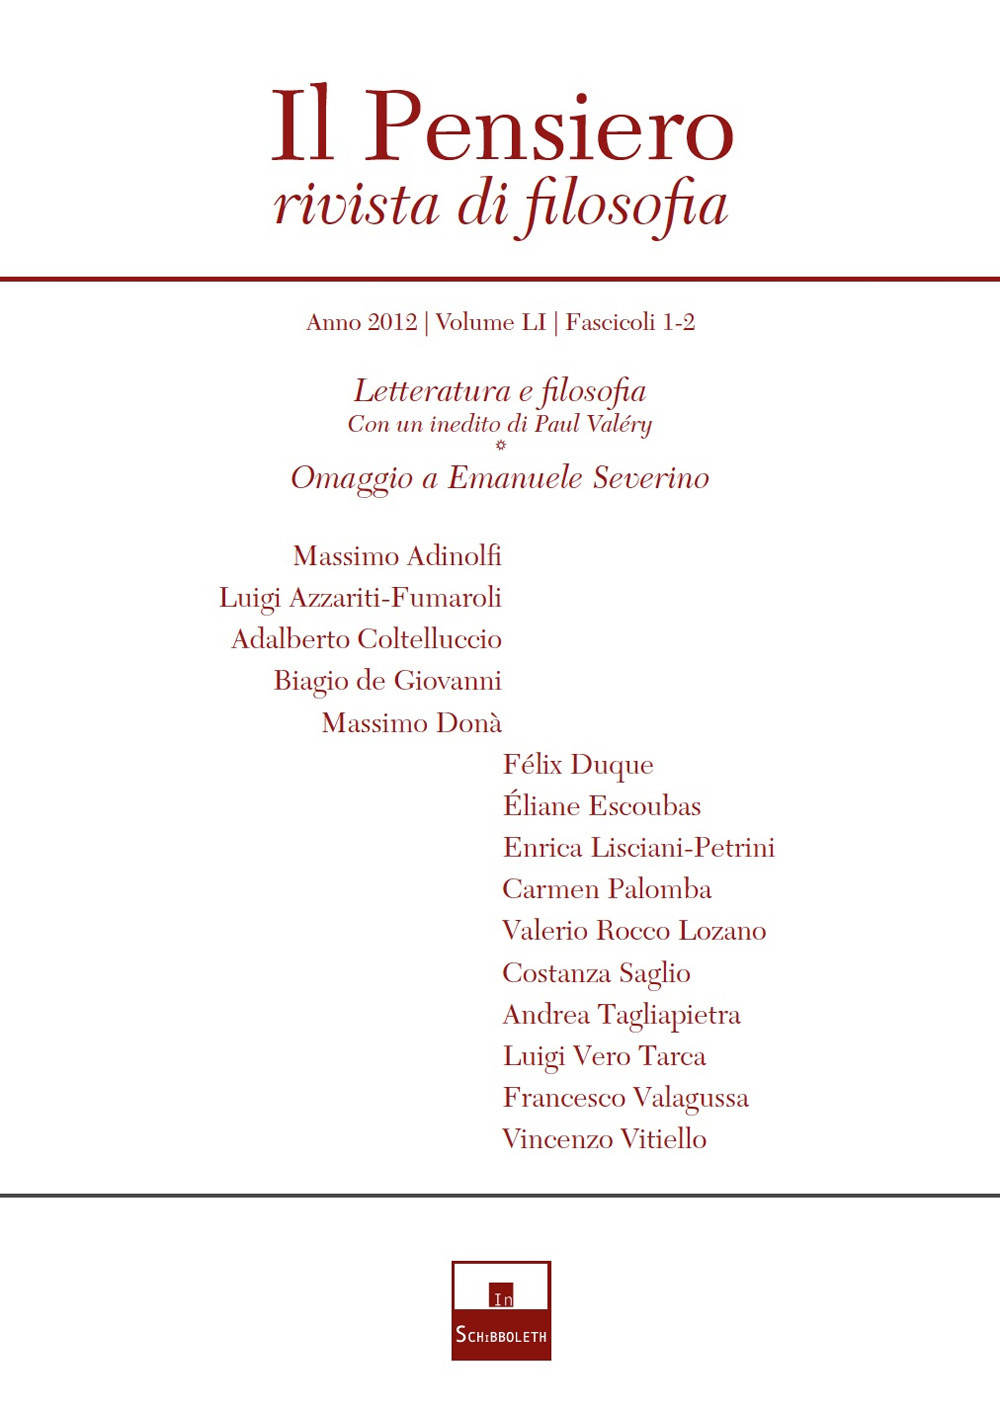 Image of Il pensiero. Rivista di filosofia (2012). Vol. 51: Letteratura e filosofia (con un inedito di Paul Valéry)-Omaggio a Emanuele Severino.